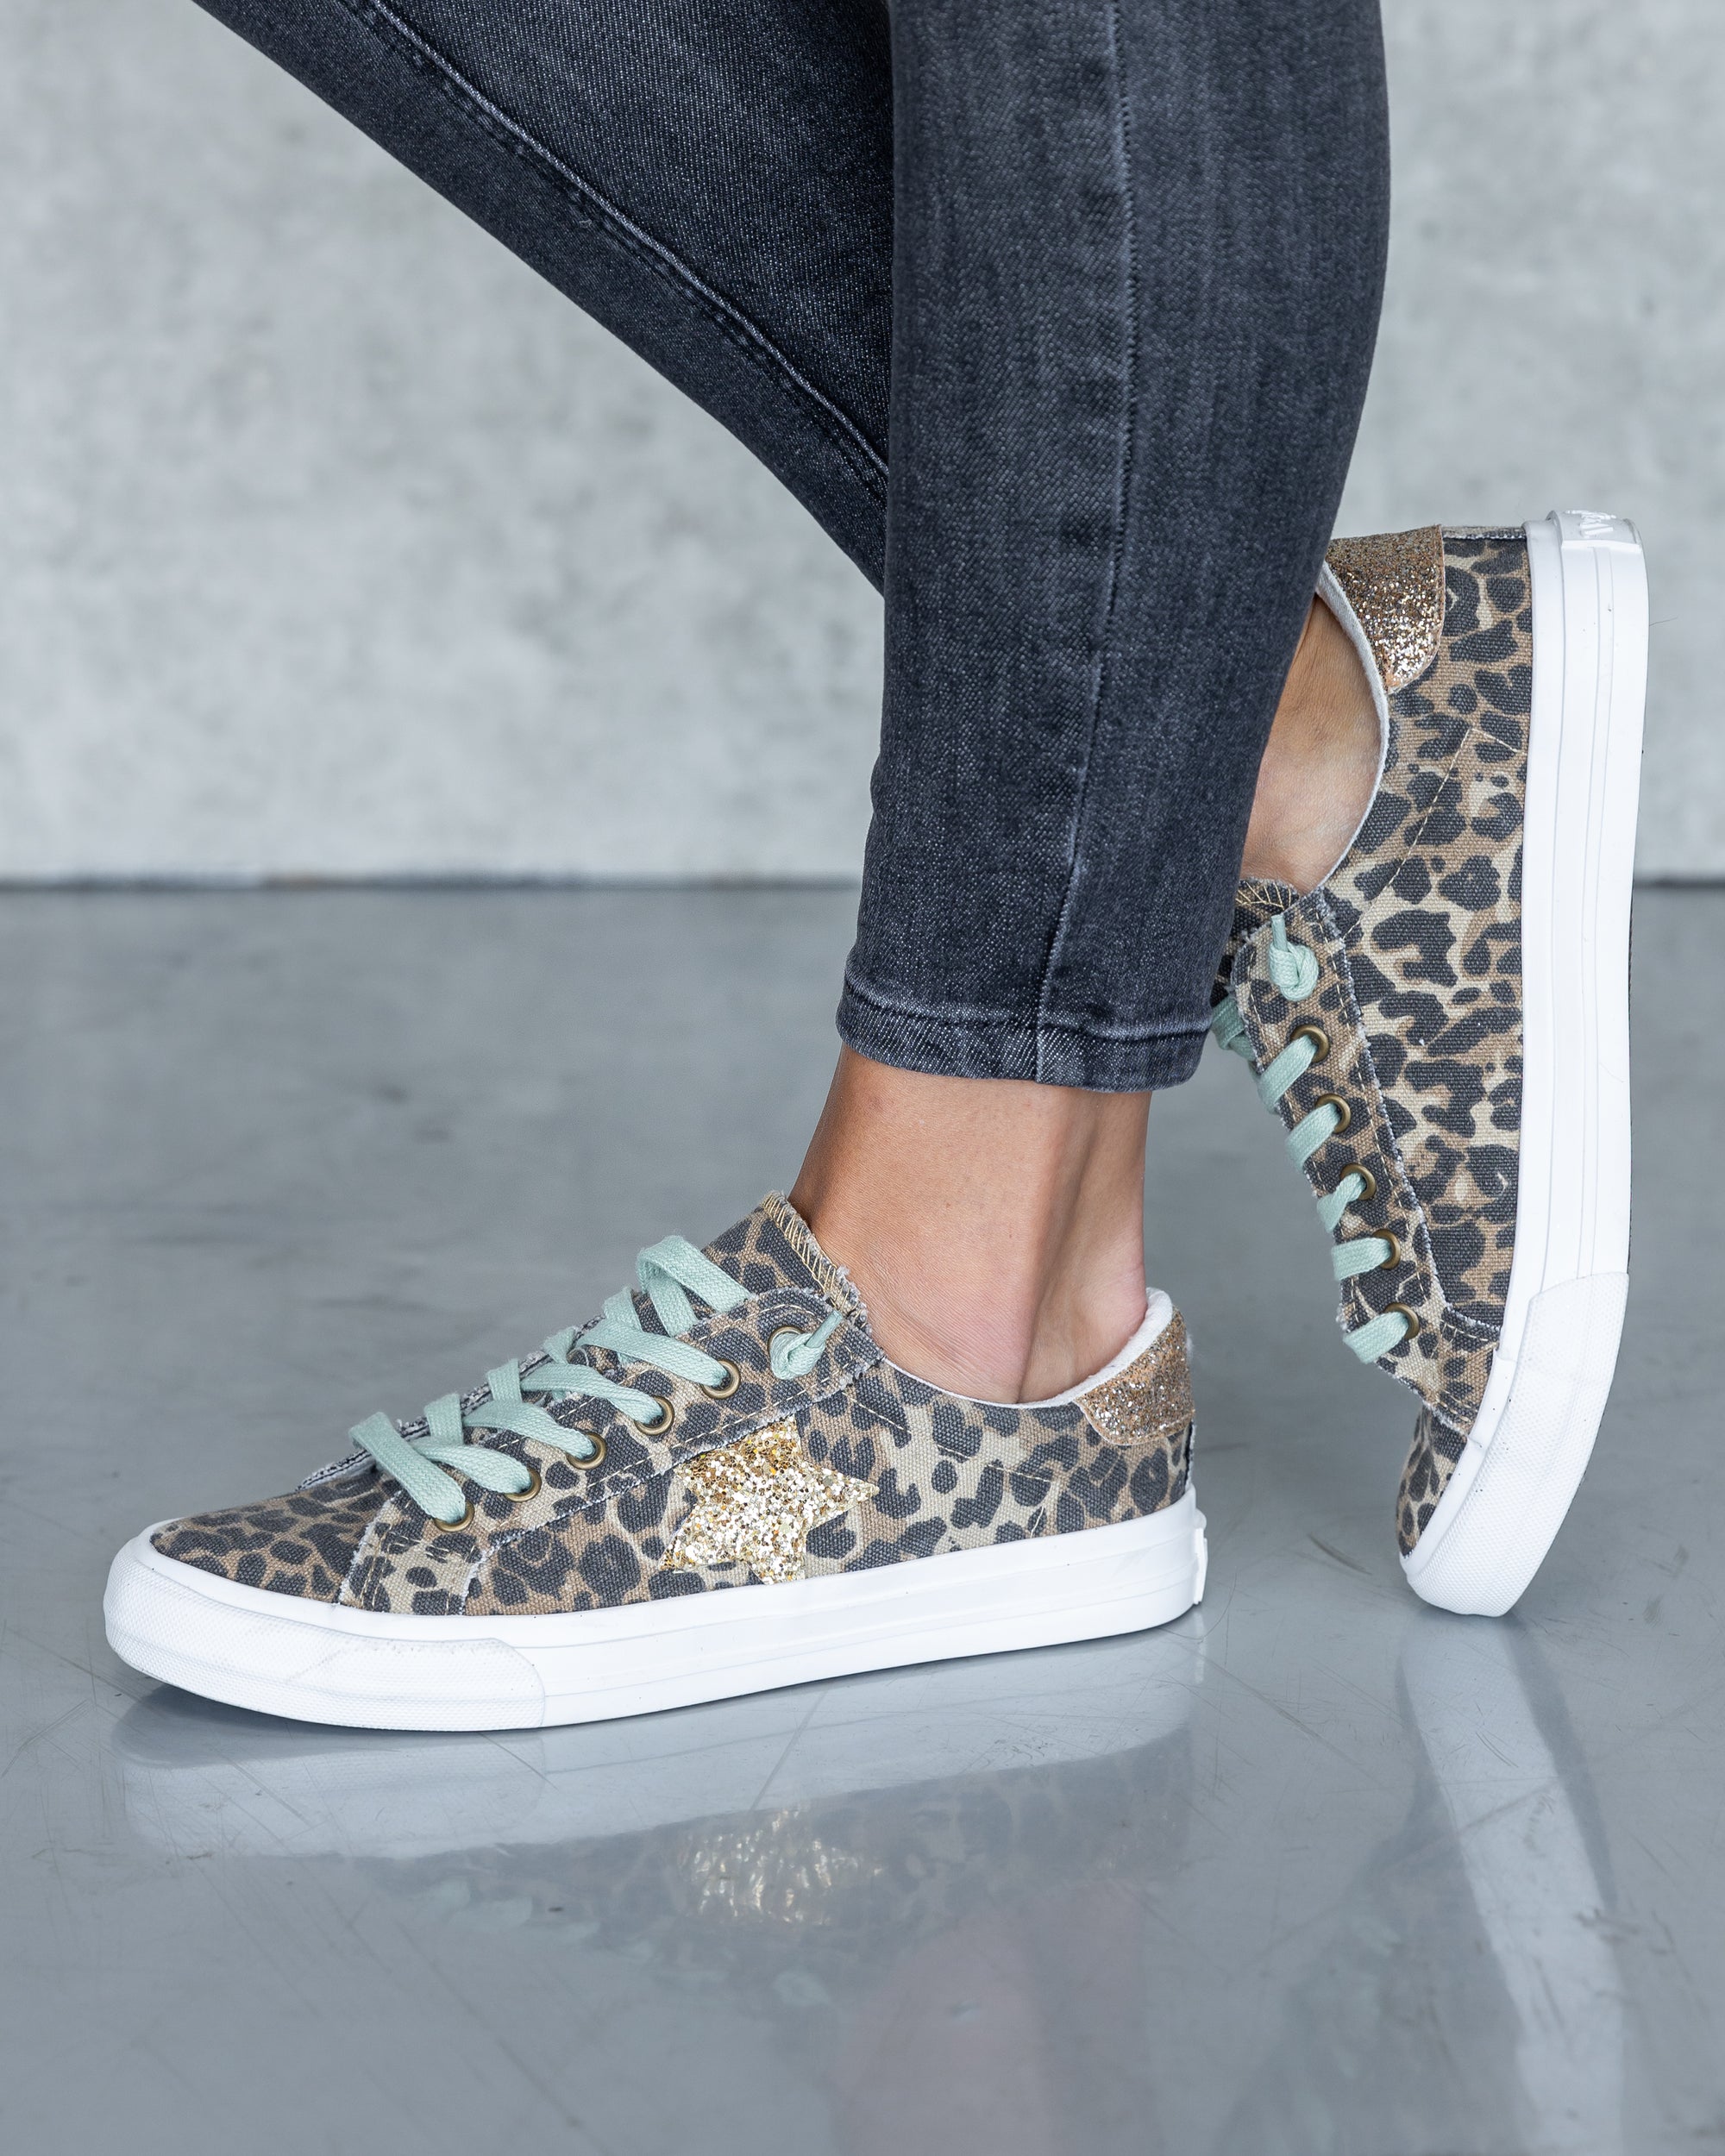 Aidan Up Sneakers - Leopard - Eleven Oaks Boutique